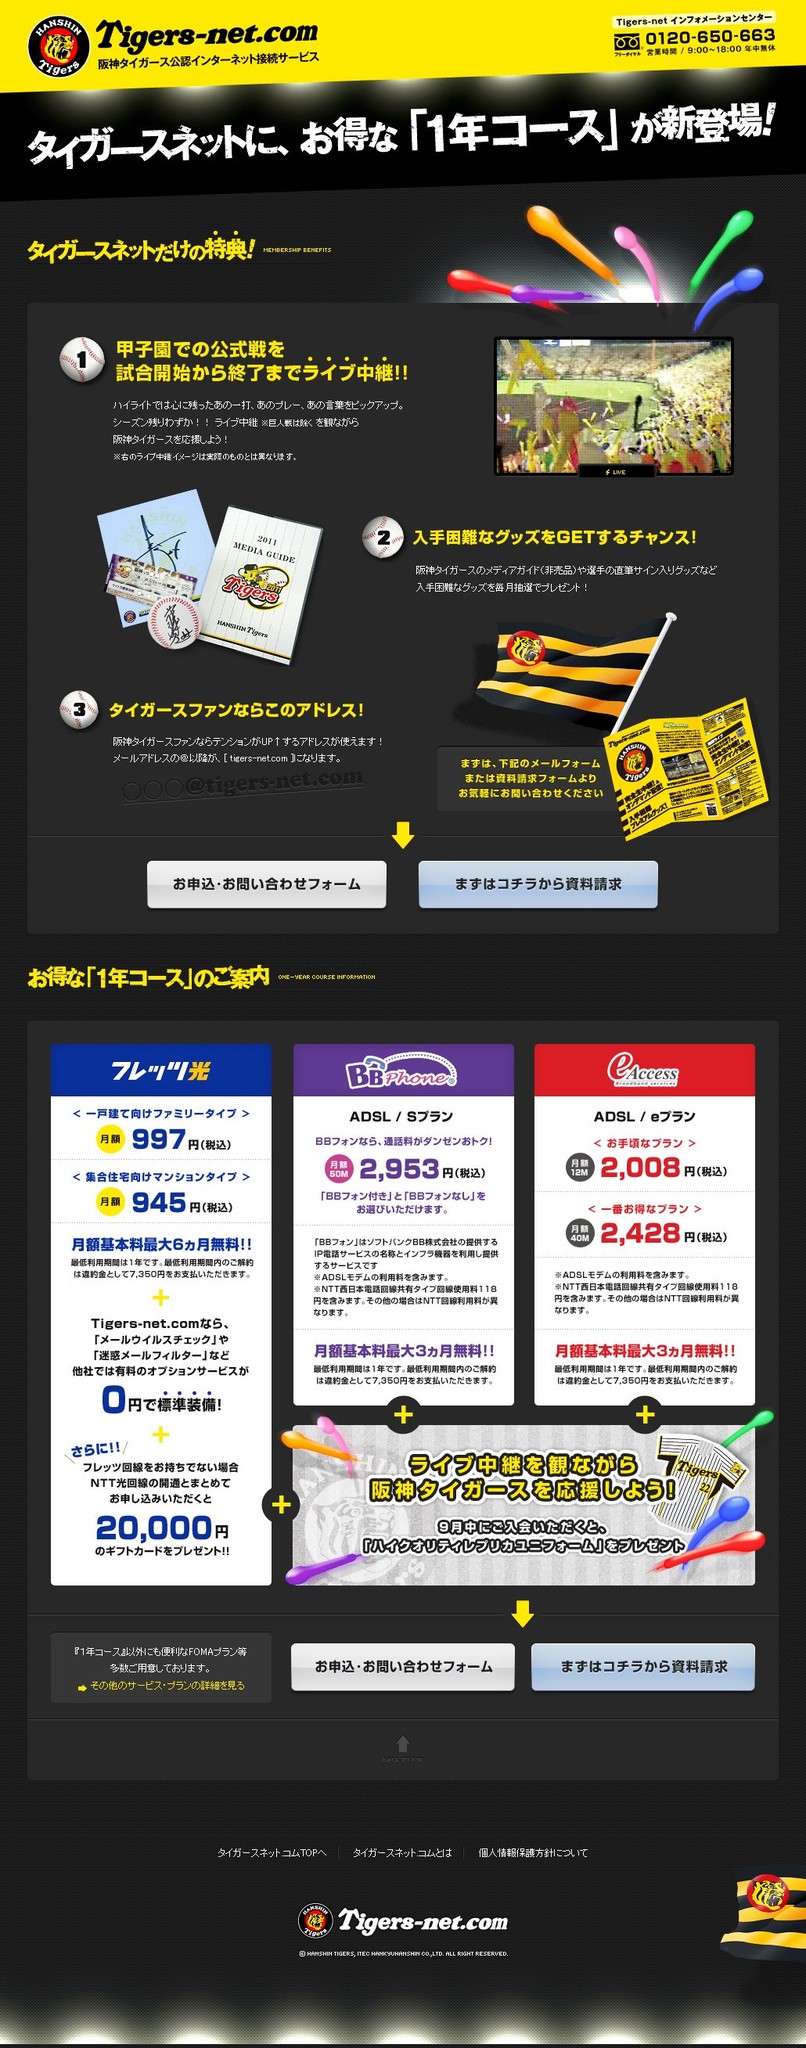 阪神タイガース公認プロバイダtigers Net Com 新プラン 1年コース 提供開始 アイテック阪急阪神株式会社のプレスリリース